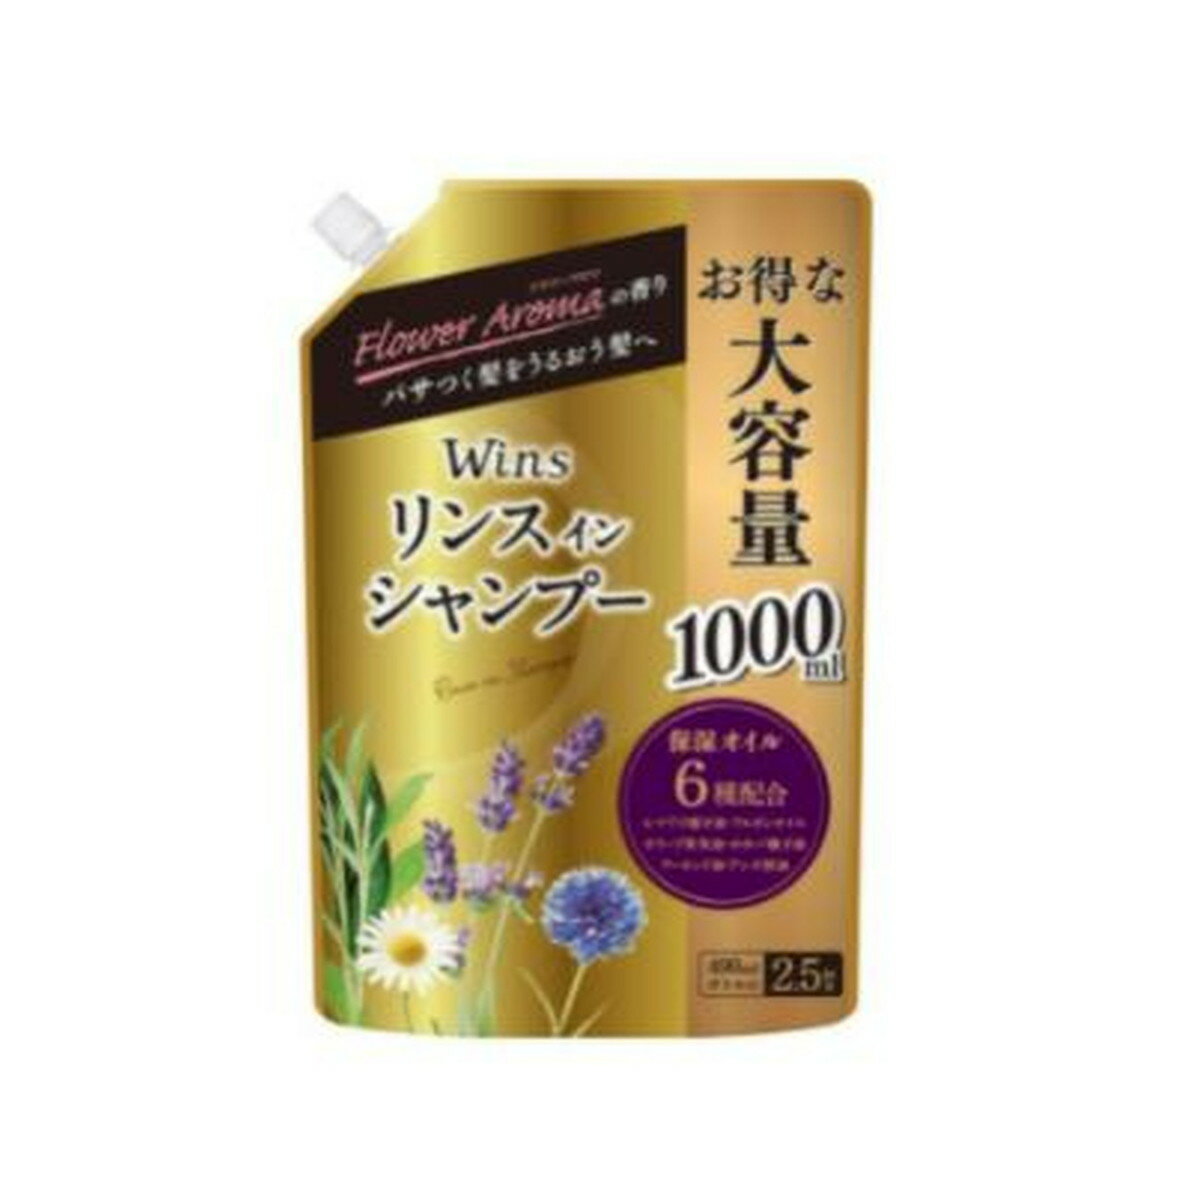 商品名：日本合成洗剤 ウインズ リンス イン シャンプー 大容量 つめかえ用 1000ml内容量：1000mlJANコード：4904112830530発売元、製造元、輸入元又は販売元：日本合成洗剤株式会社原産国：日本区分：化粧品商品番号：101-12592商品説明リンス配合の大容量シャンプーとなります。6種類の保湿オイル、8種類の植物エキス配合。髪に潤いとハリを与え地肌に優しいシャンプーです。フラワーアロマの香り。広告文責：アットライフ株式会社TEL 050-3196-1510 ※商品パッケージは変更の場合あり。メーカー欠品または完売の際、キャンセルをお願いすることがあります。ご了承ください。